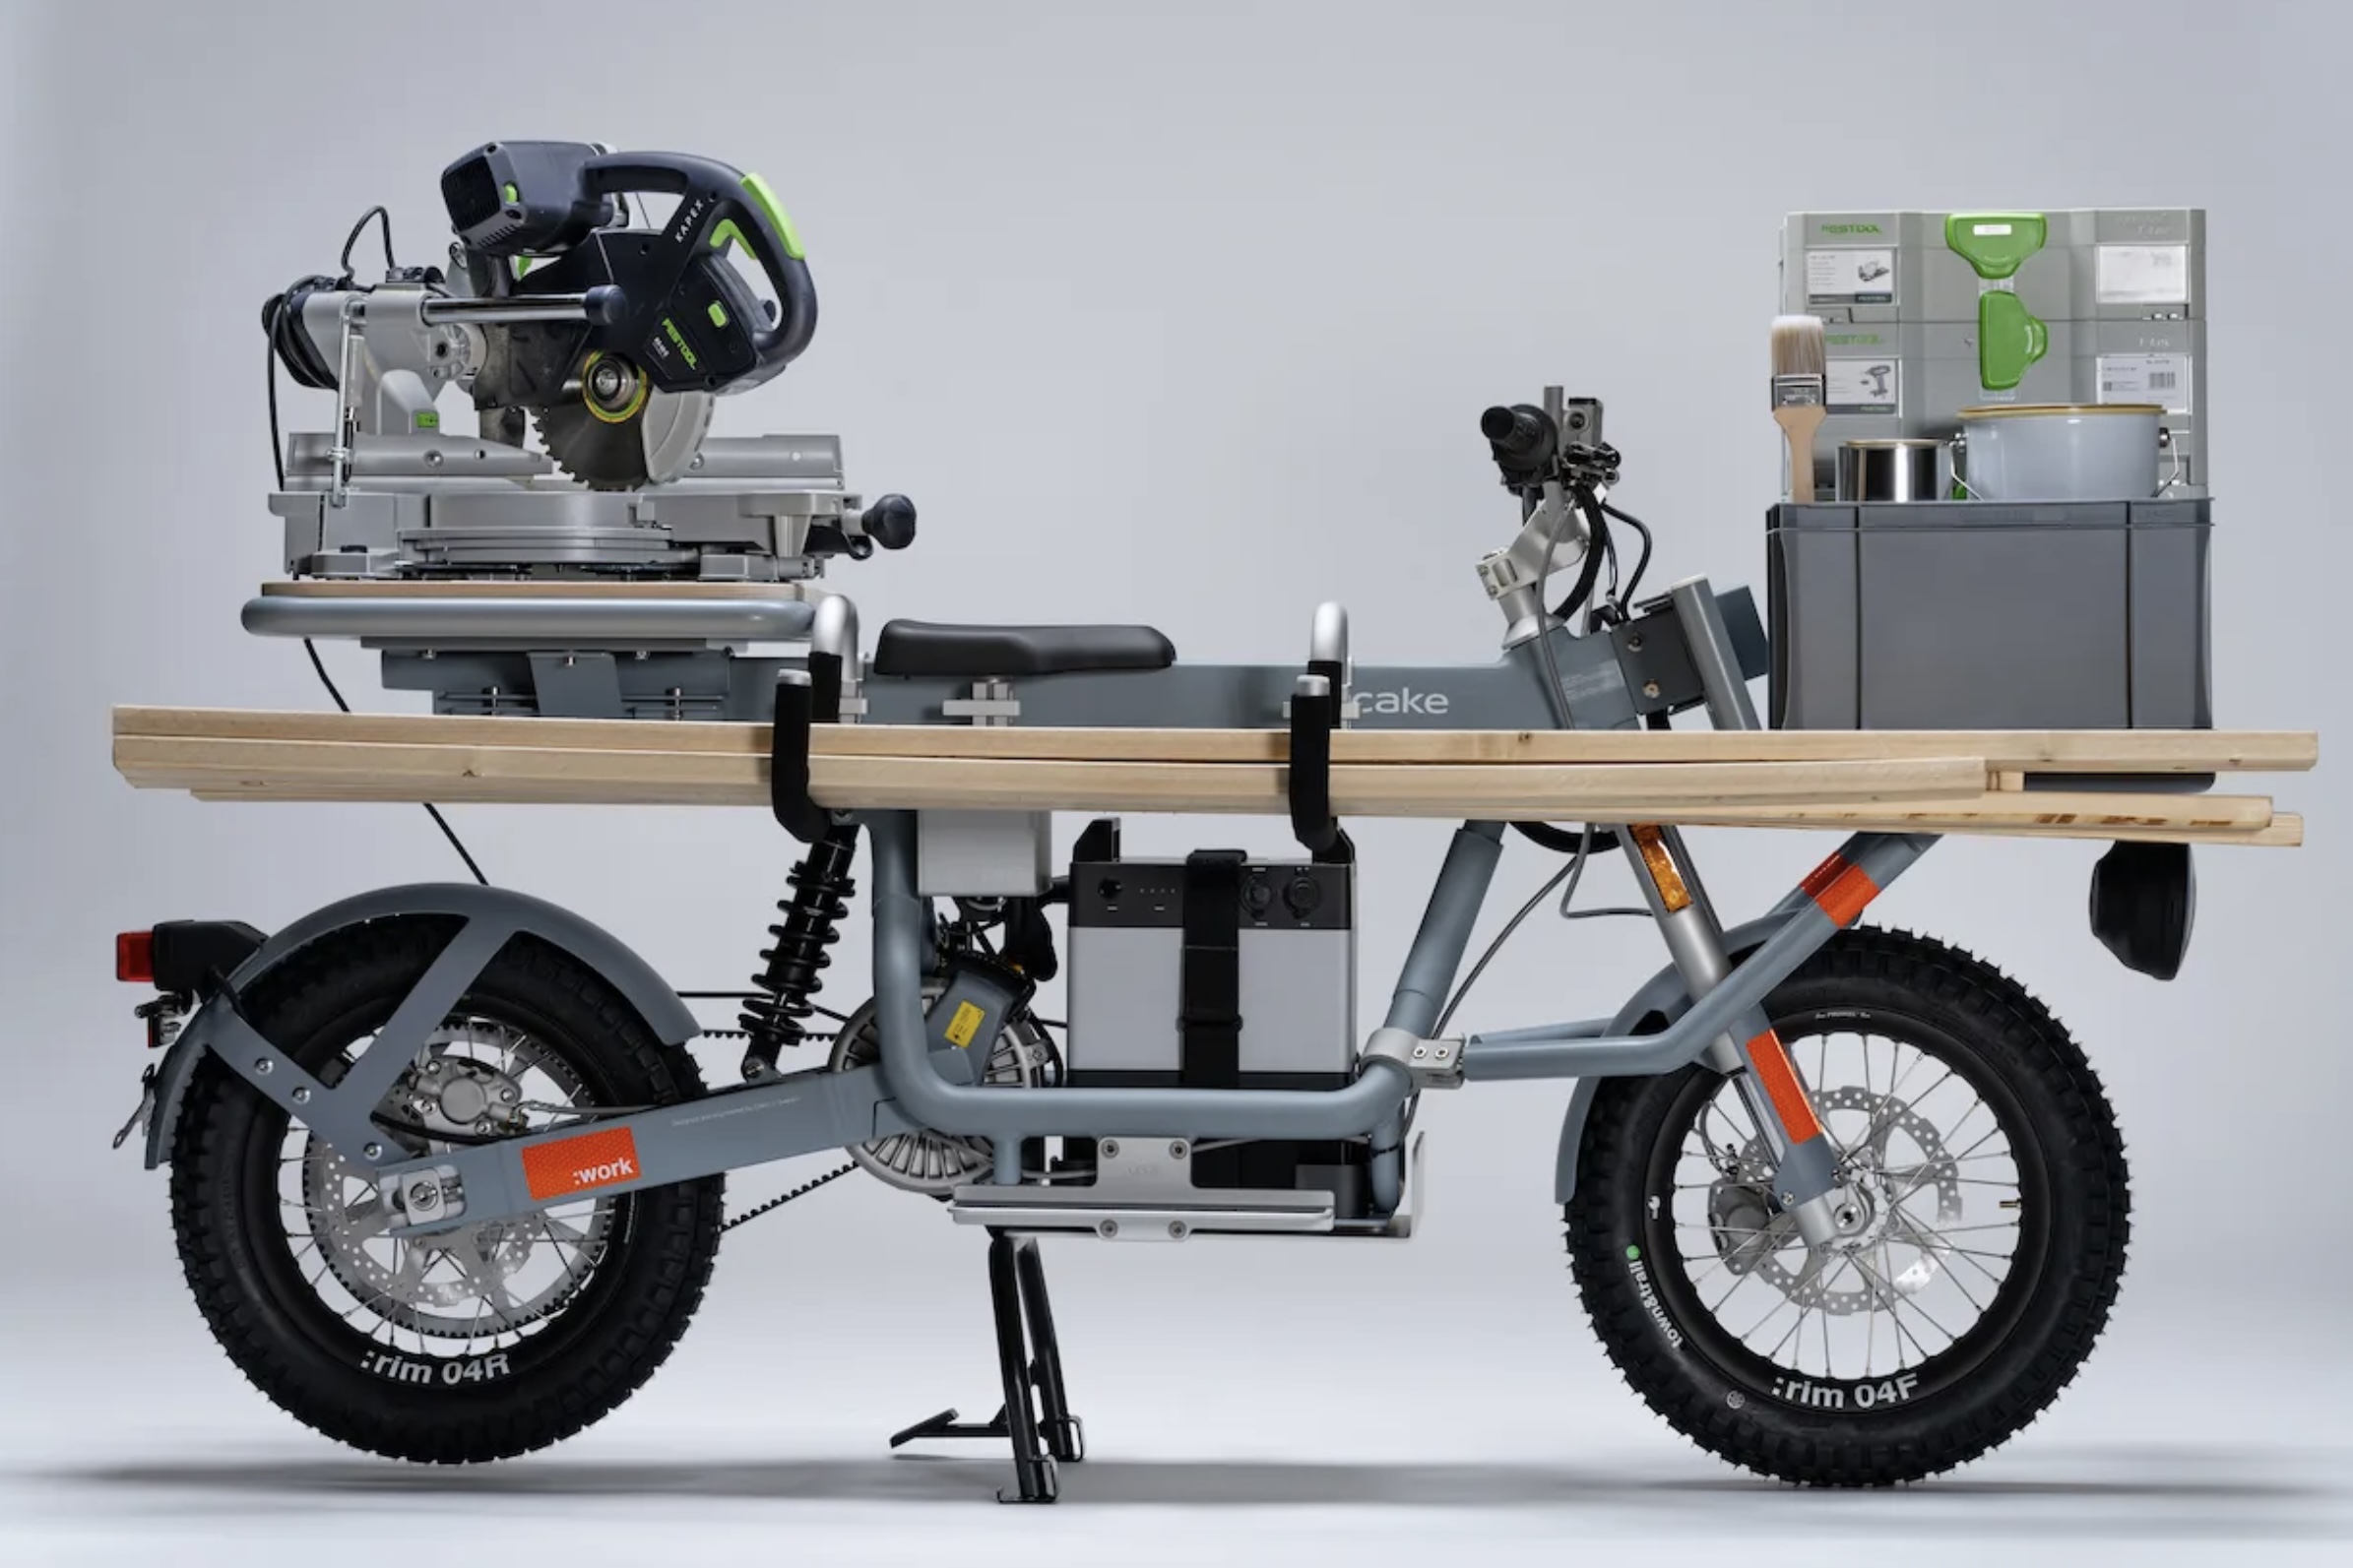 CAKE giới thiệu 3 mẫu xe máy điện chuyên chở hàng, giá từ 4.700 USD